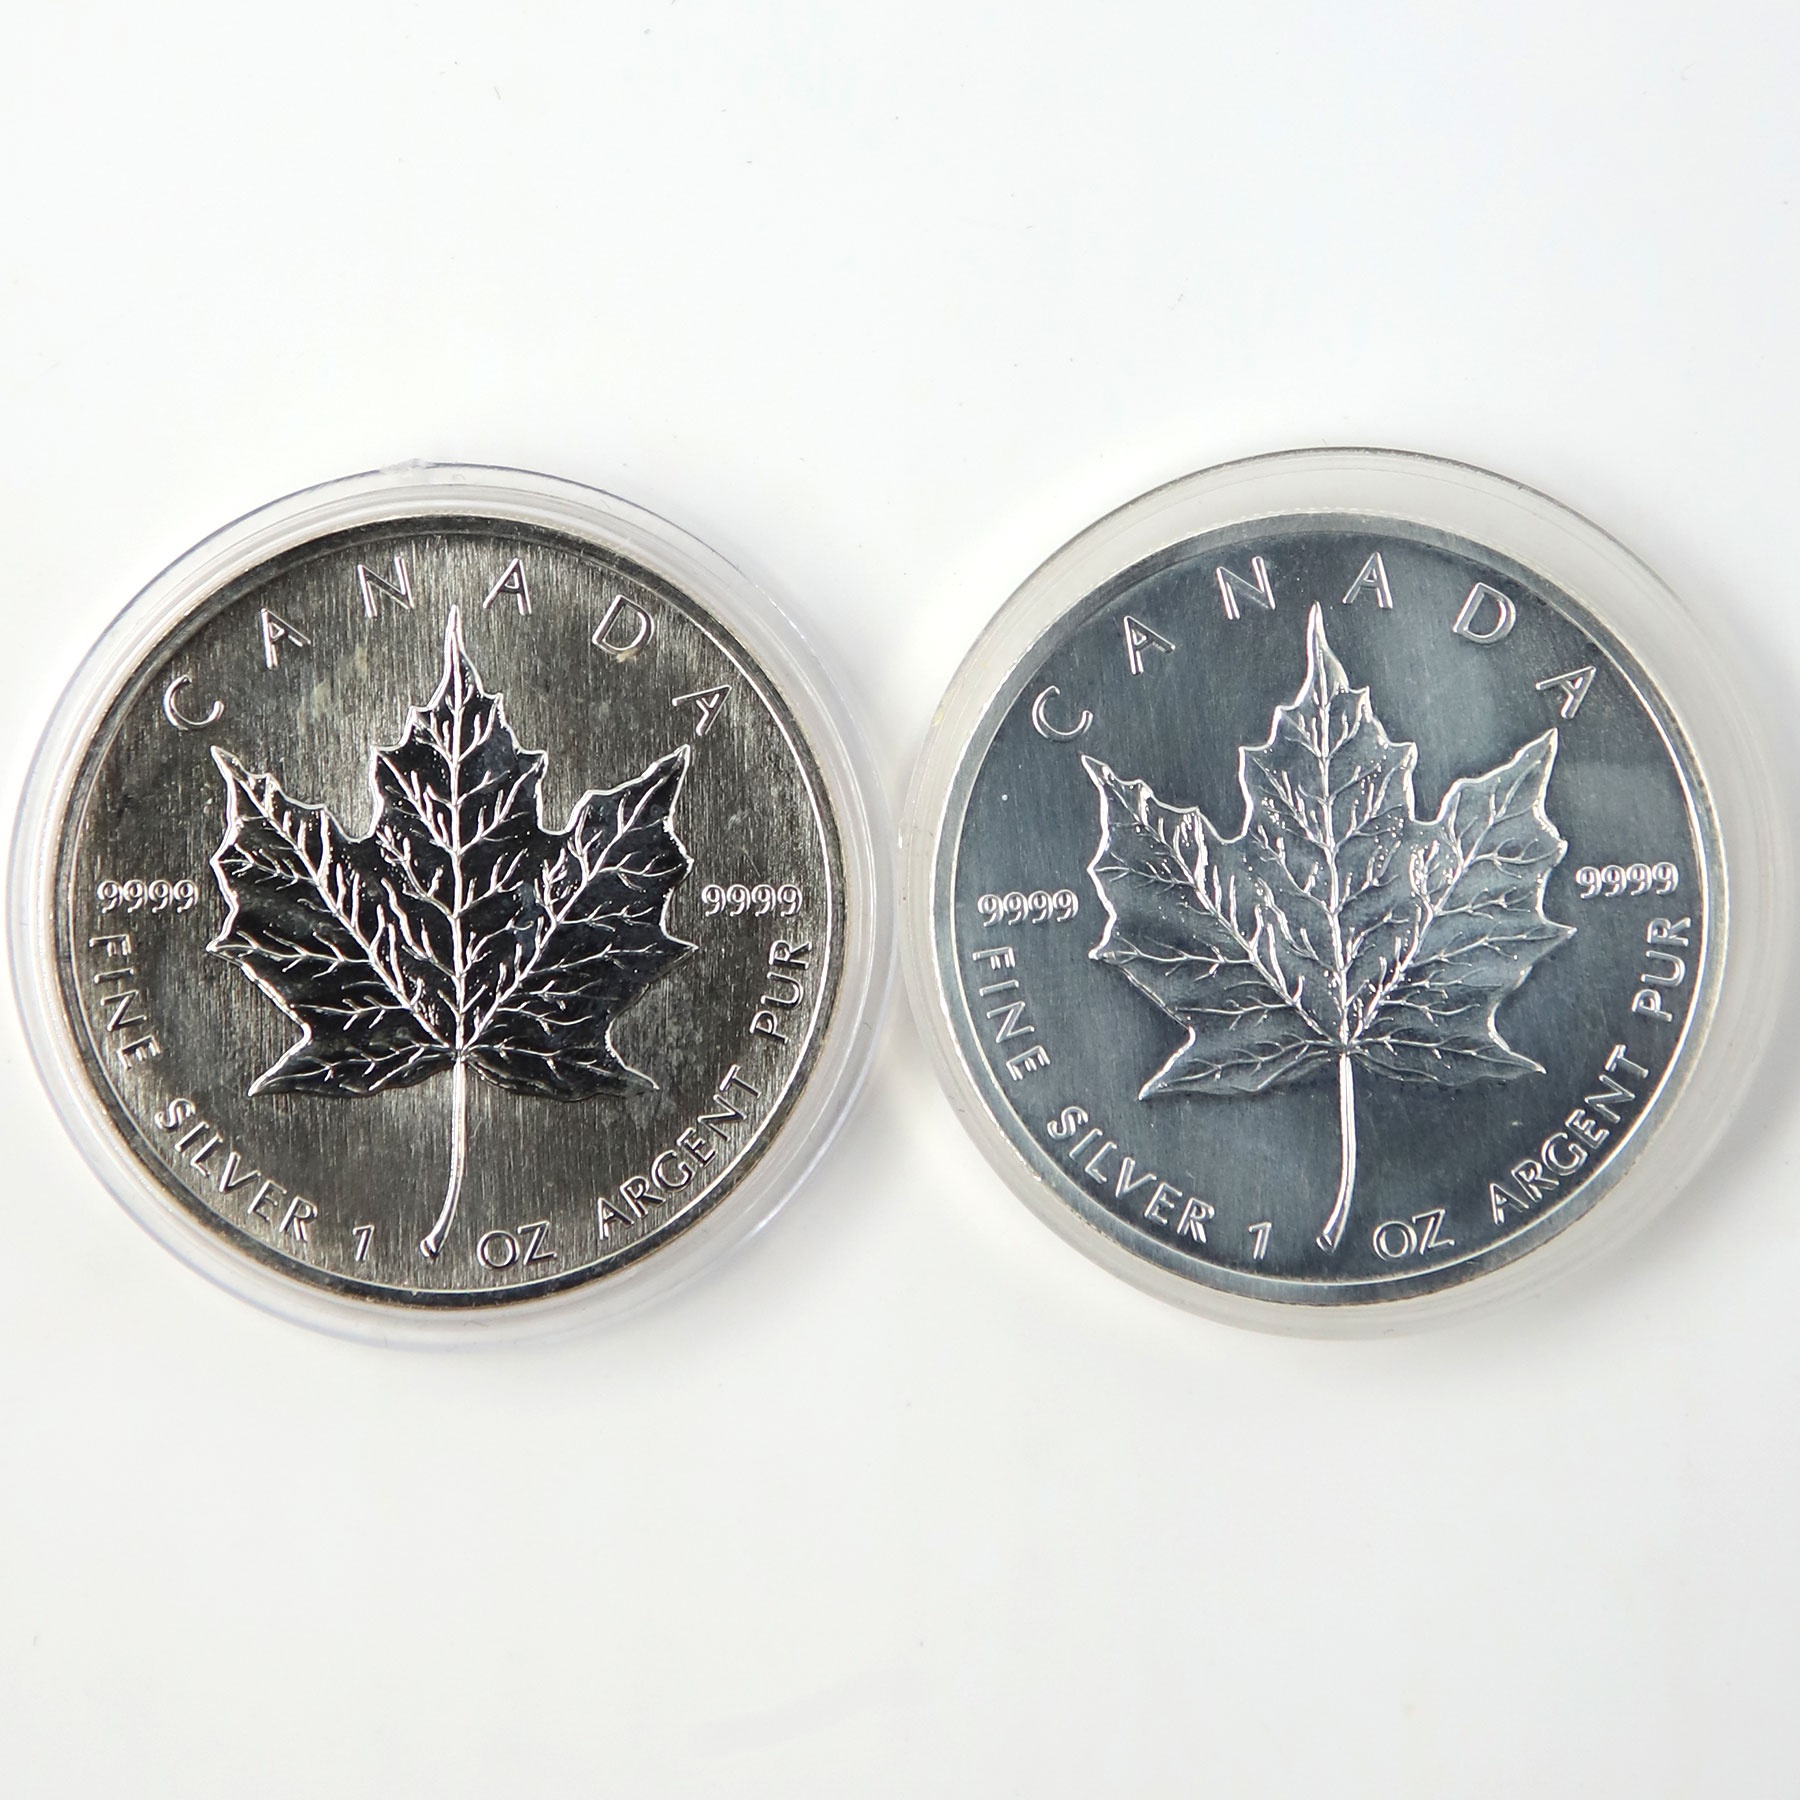 加拿大银币大全图片